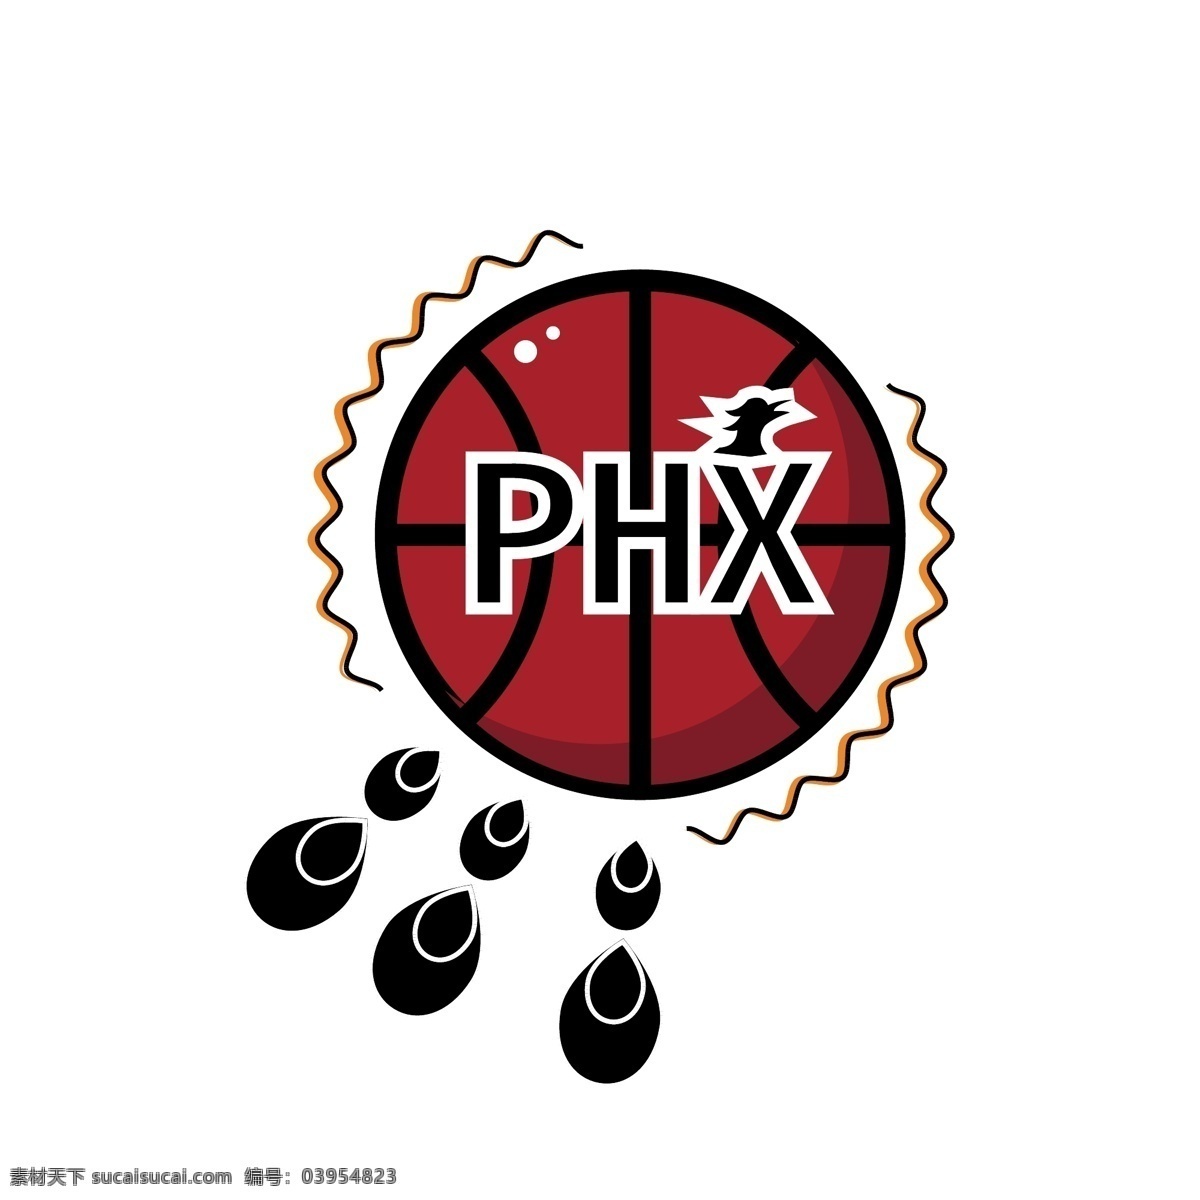 nba 太阳队 矢量 装饰 元素 装饰元素 篮球比赛 图案矢量 phx